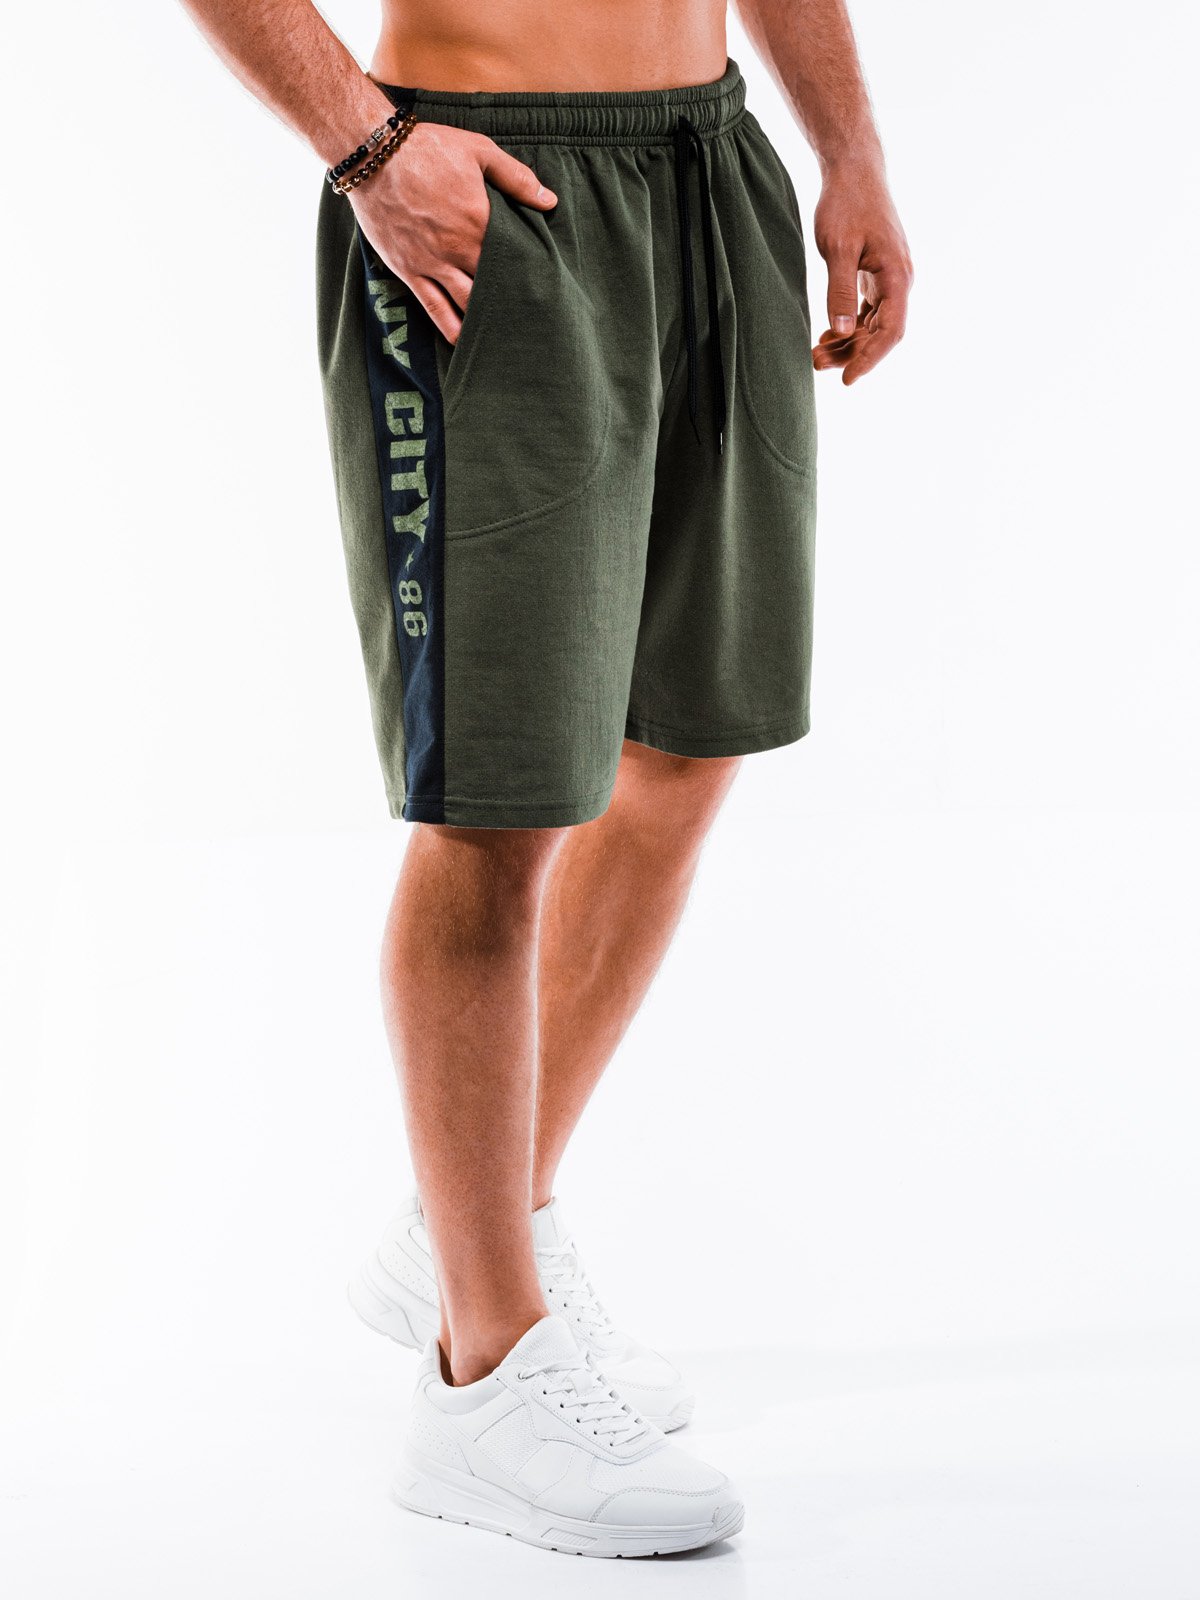 Men's short sweatpants W287 - khaki